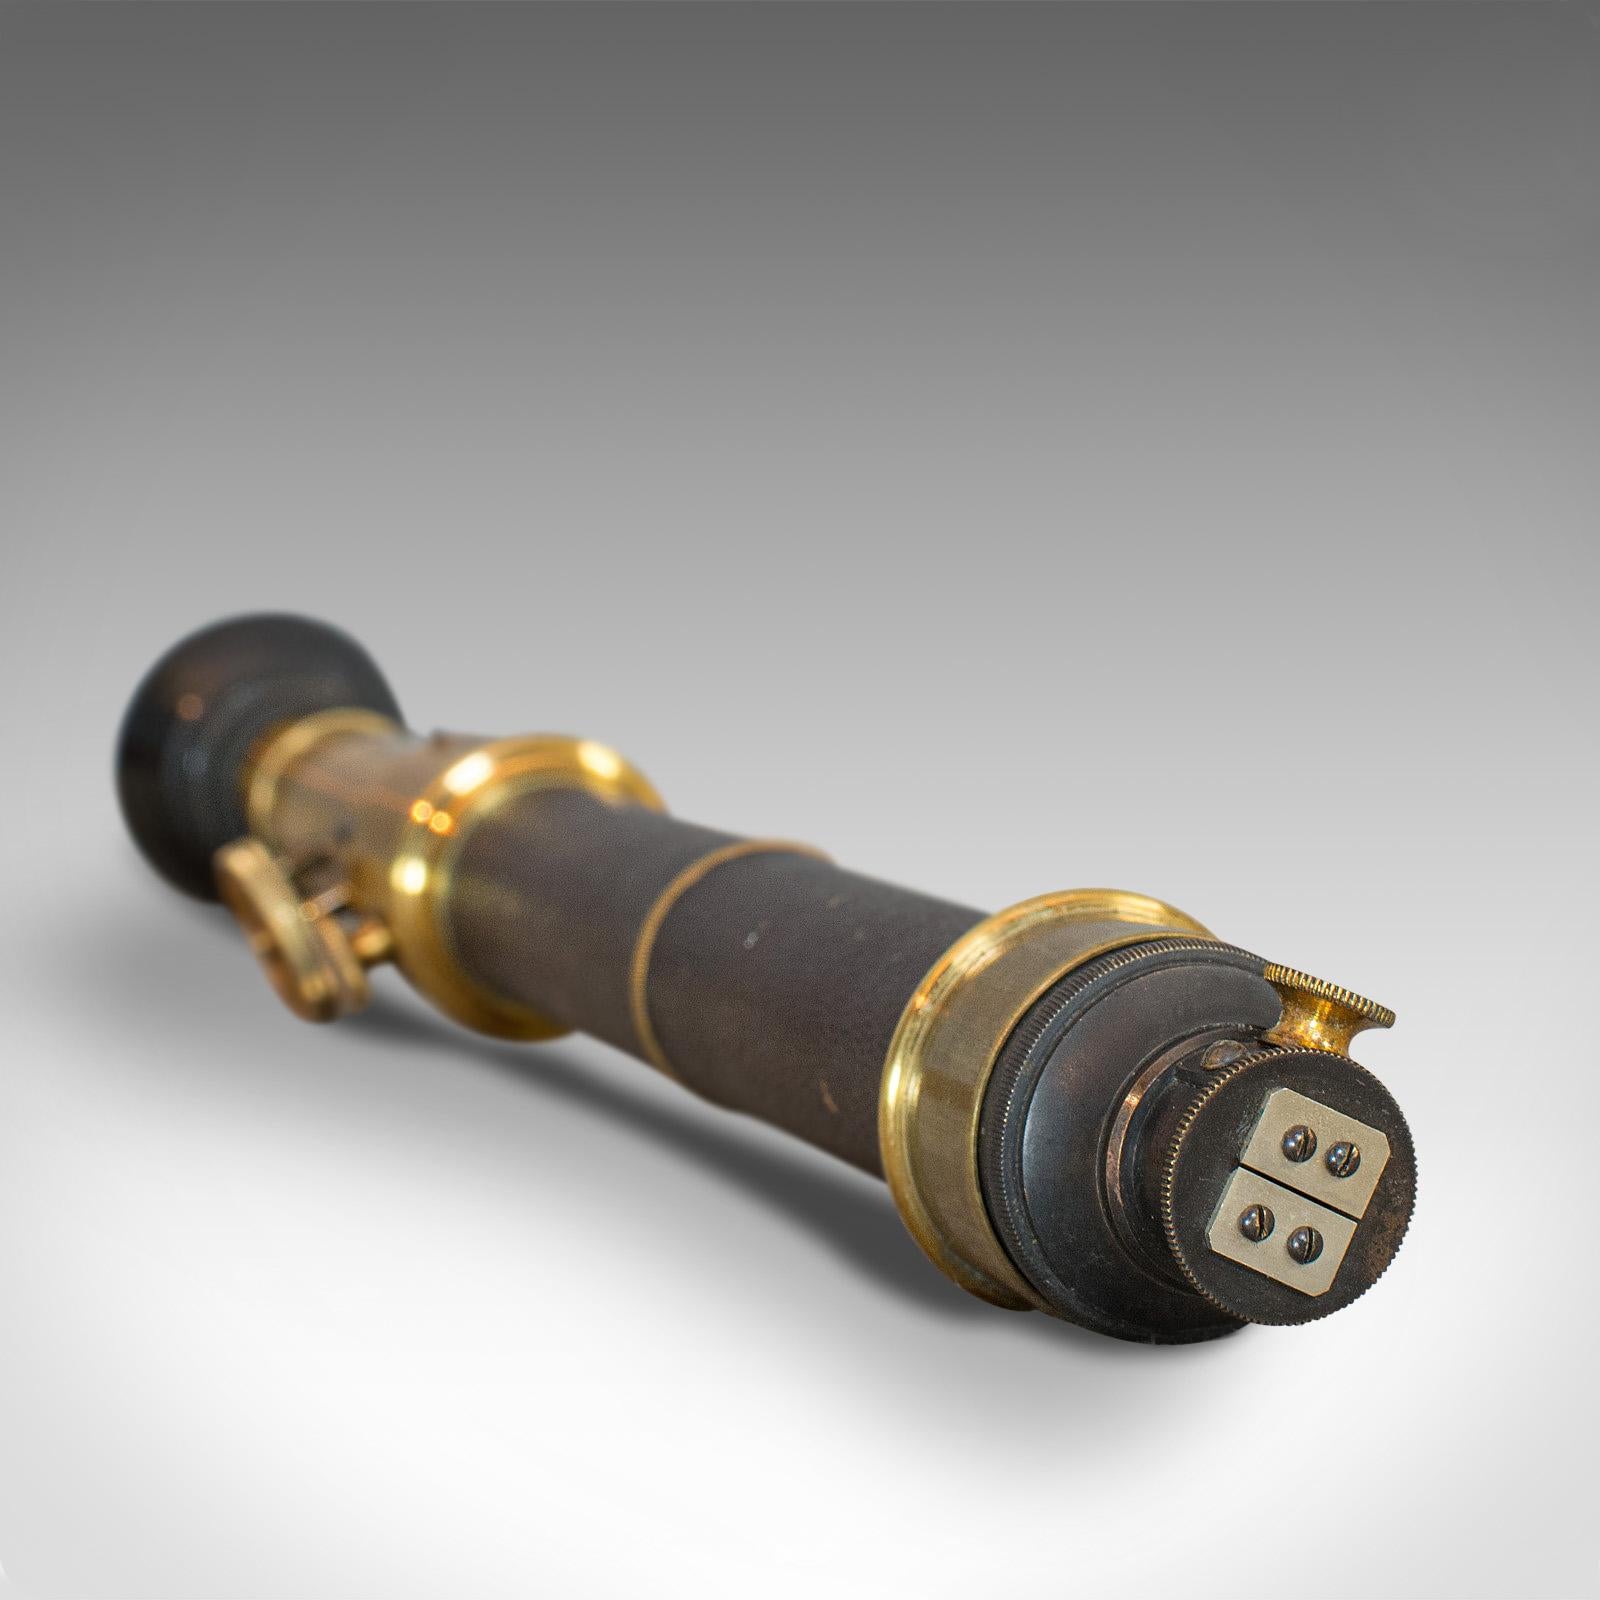 19th Century Antique Spectrometer, French, Brass, Scientific Instrument, J G Hofmann, 1860